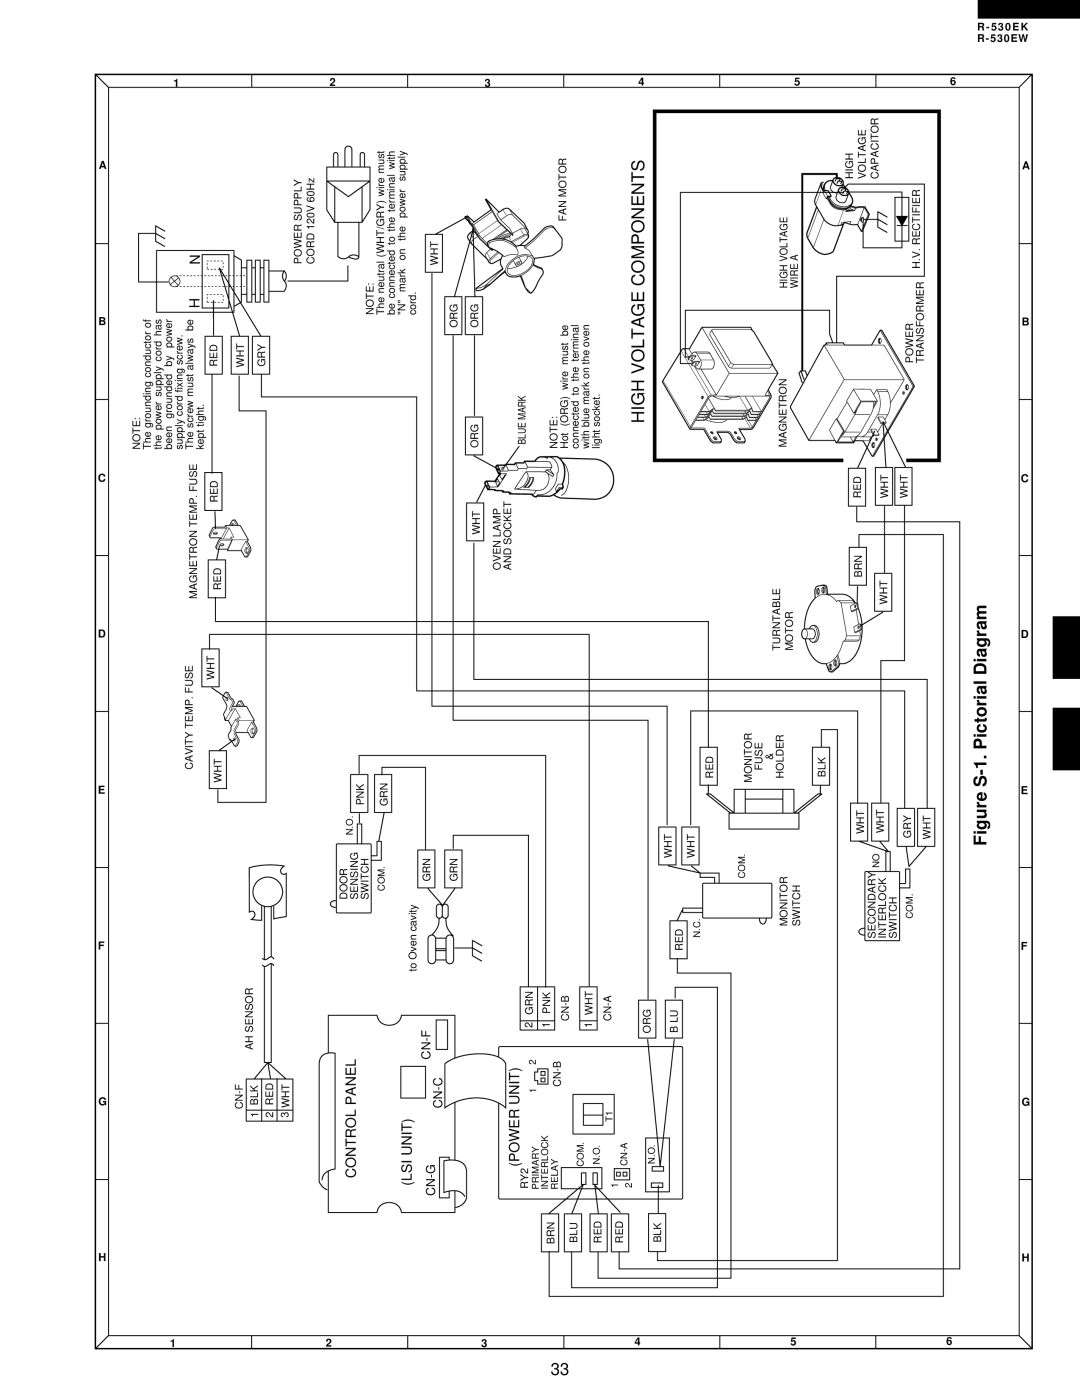 Sharp R-530EK service manual High Voltage Components, Figure S-1. Pictorial Diagram, Control Panel, Lsi Unit, Power Unit 